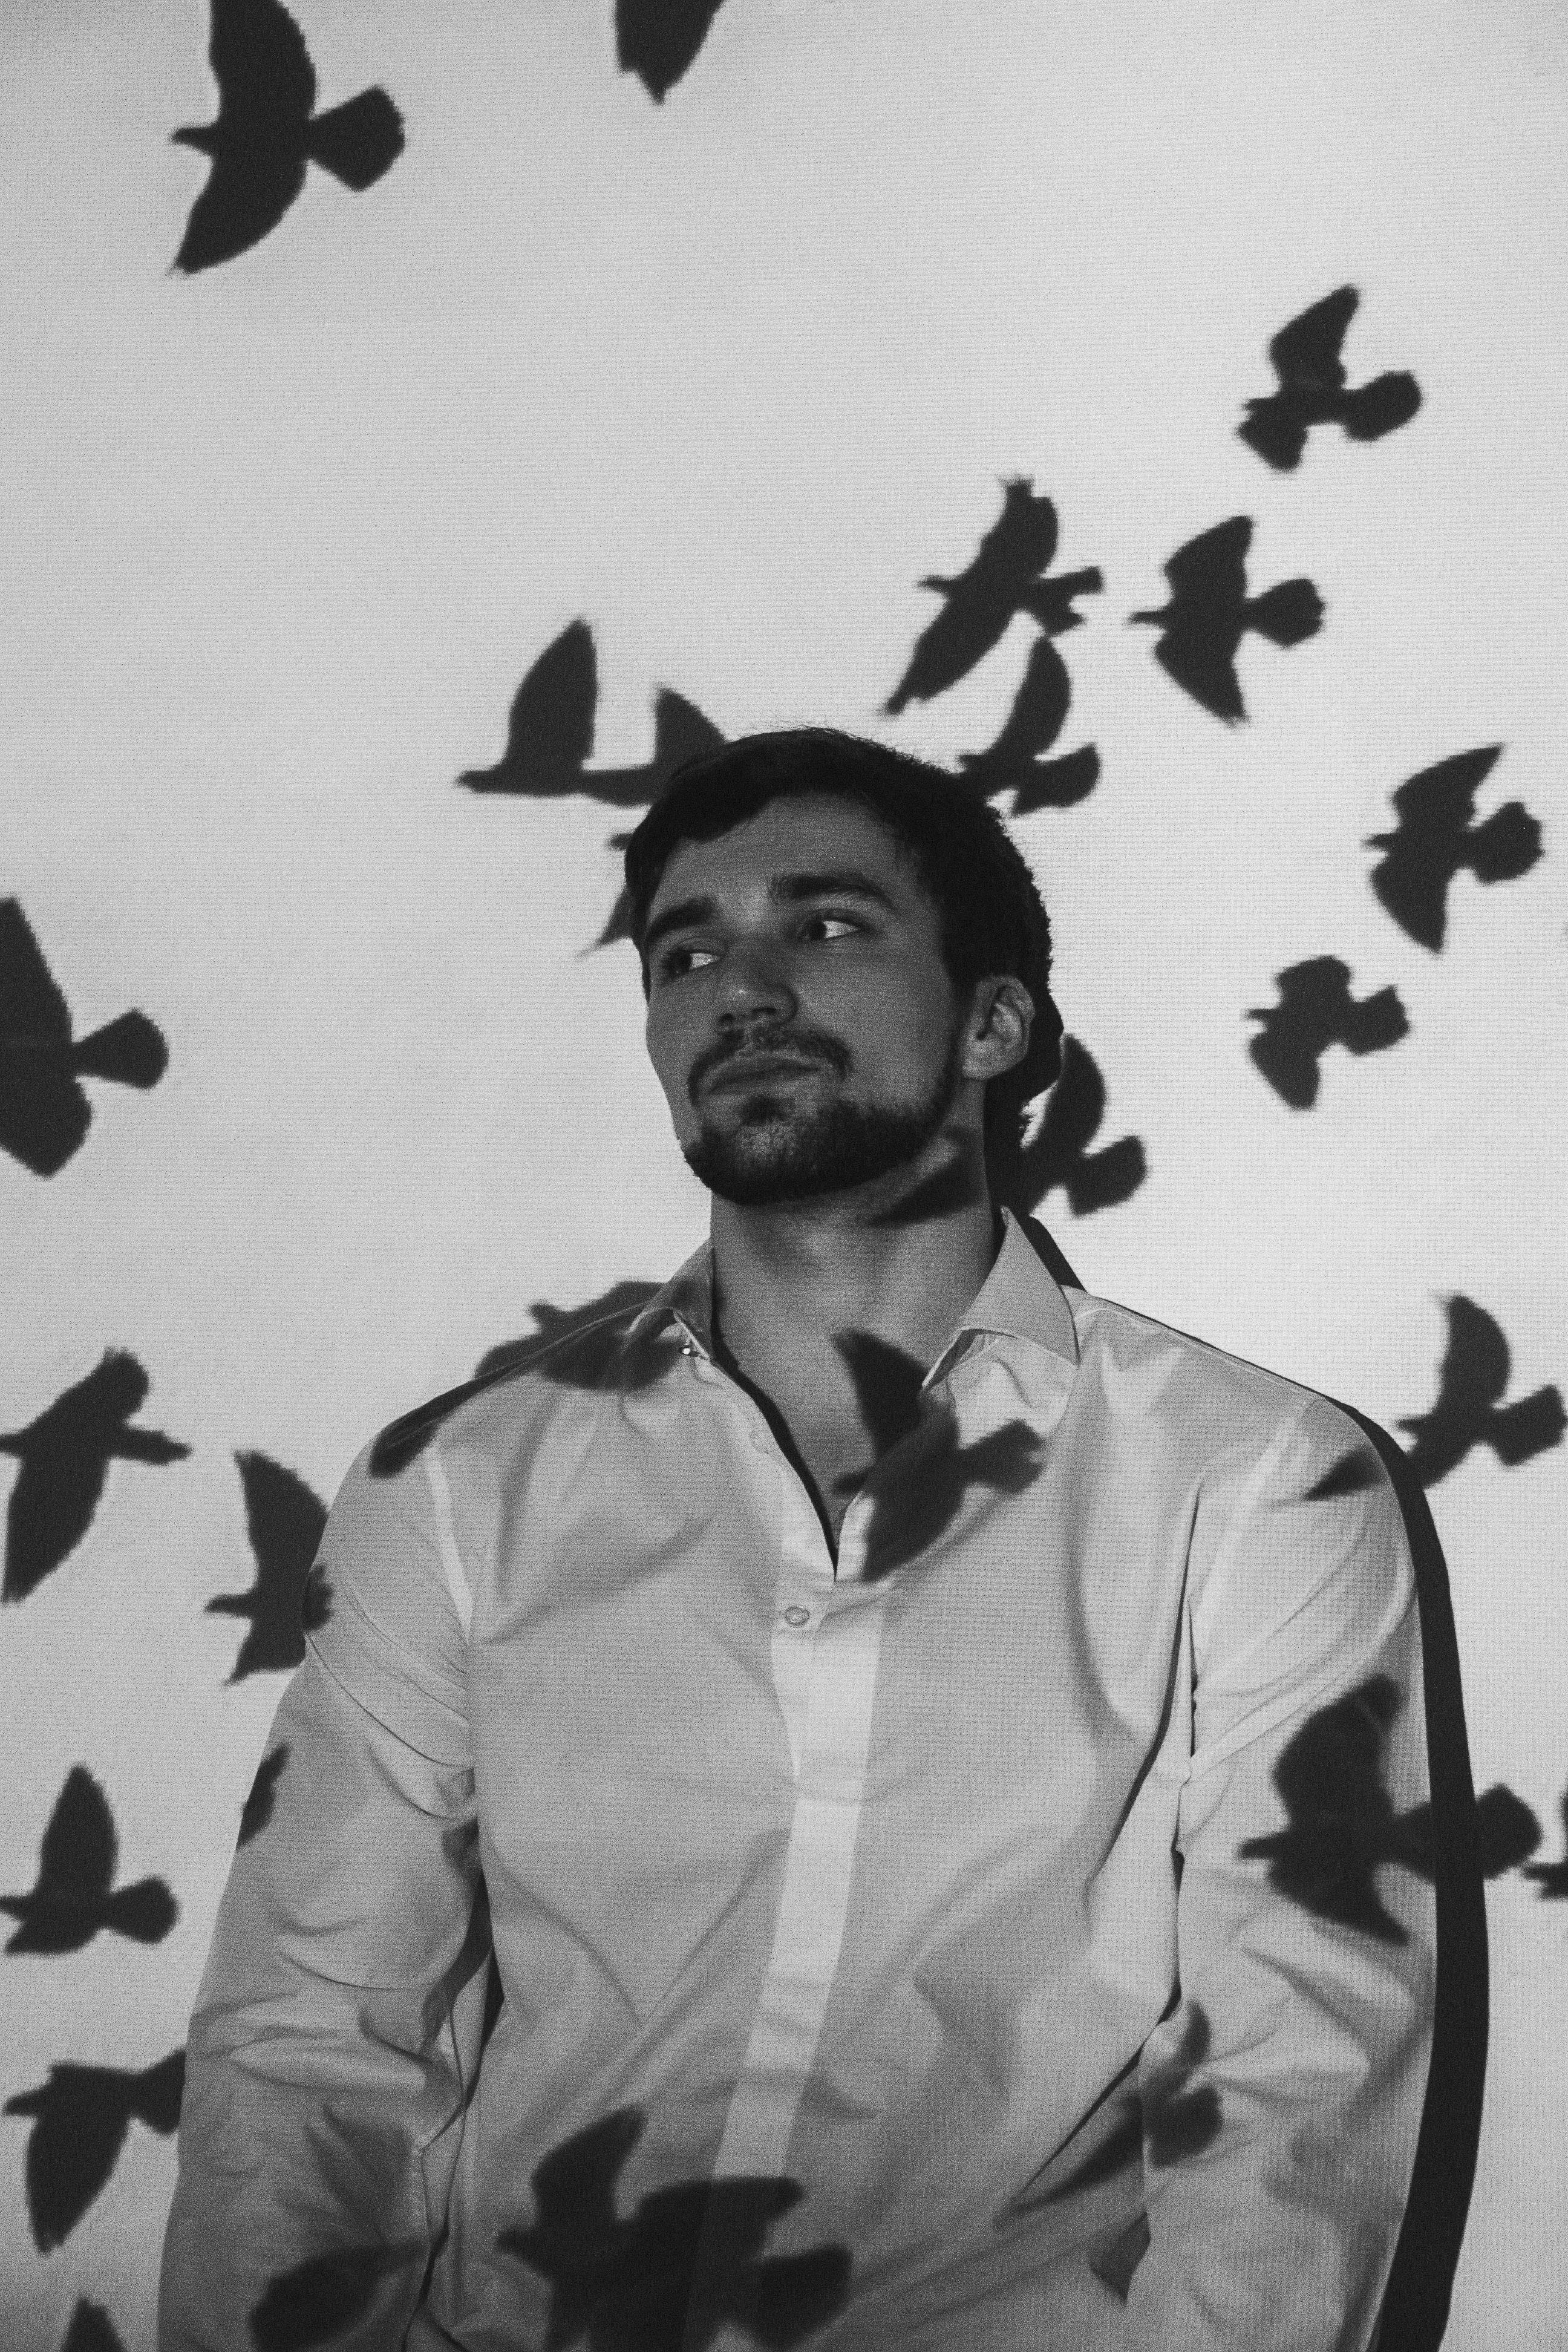 Hombre pensativo con sombras de pájaros | Fuente: Pexels